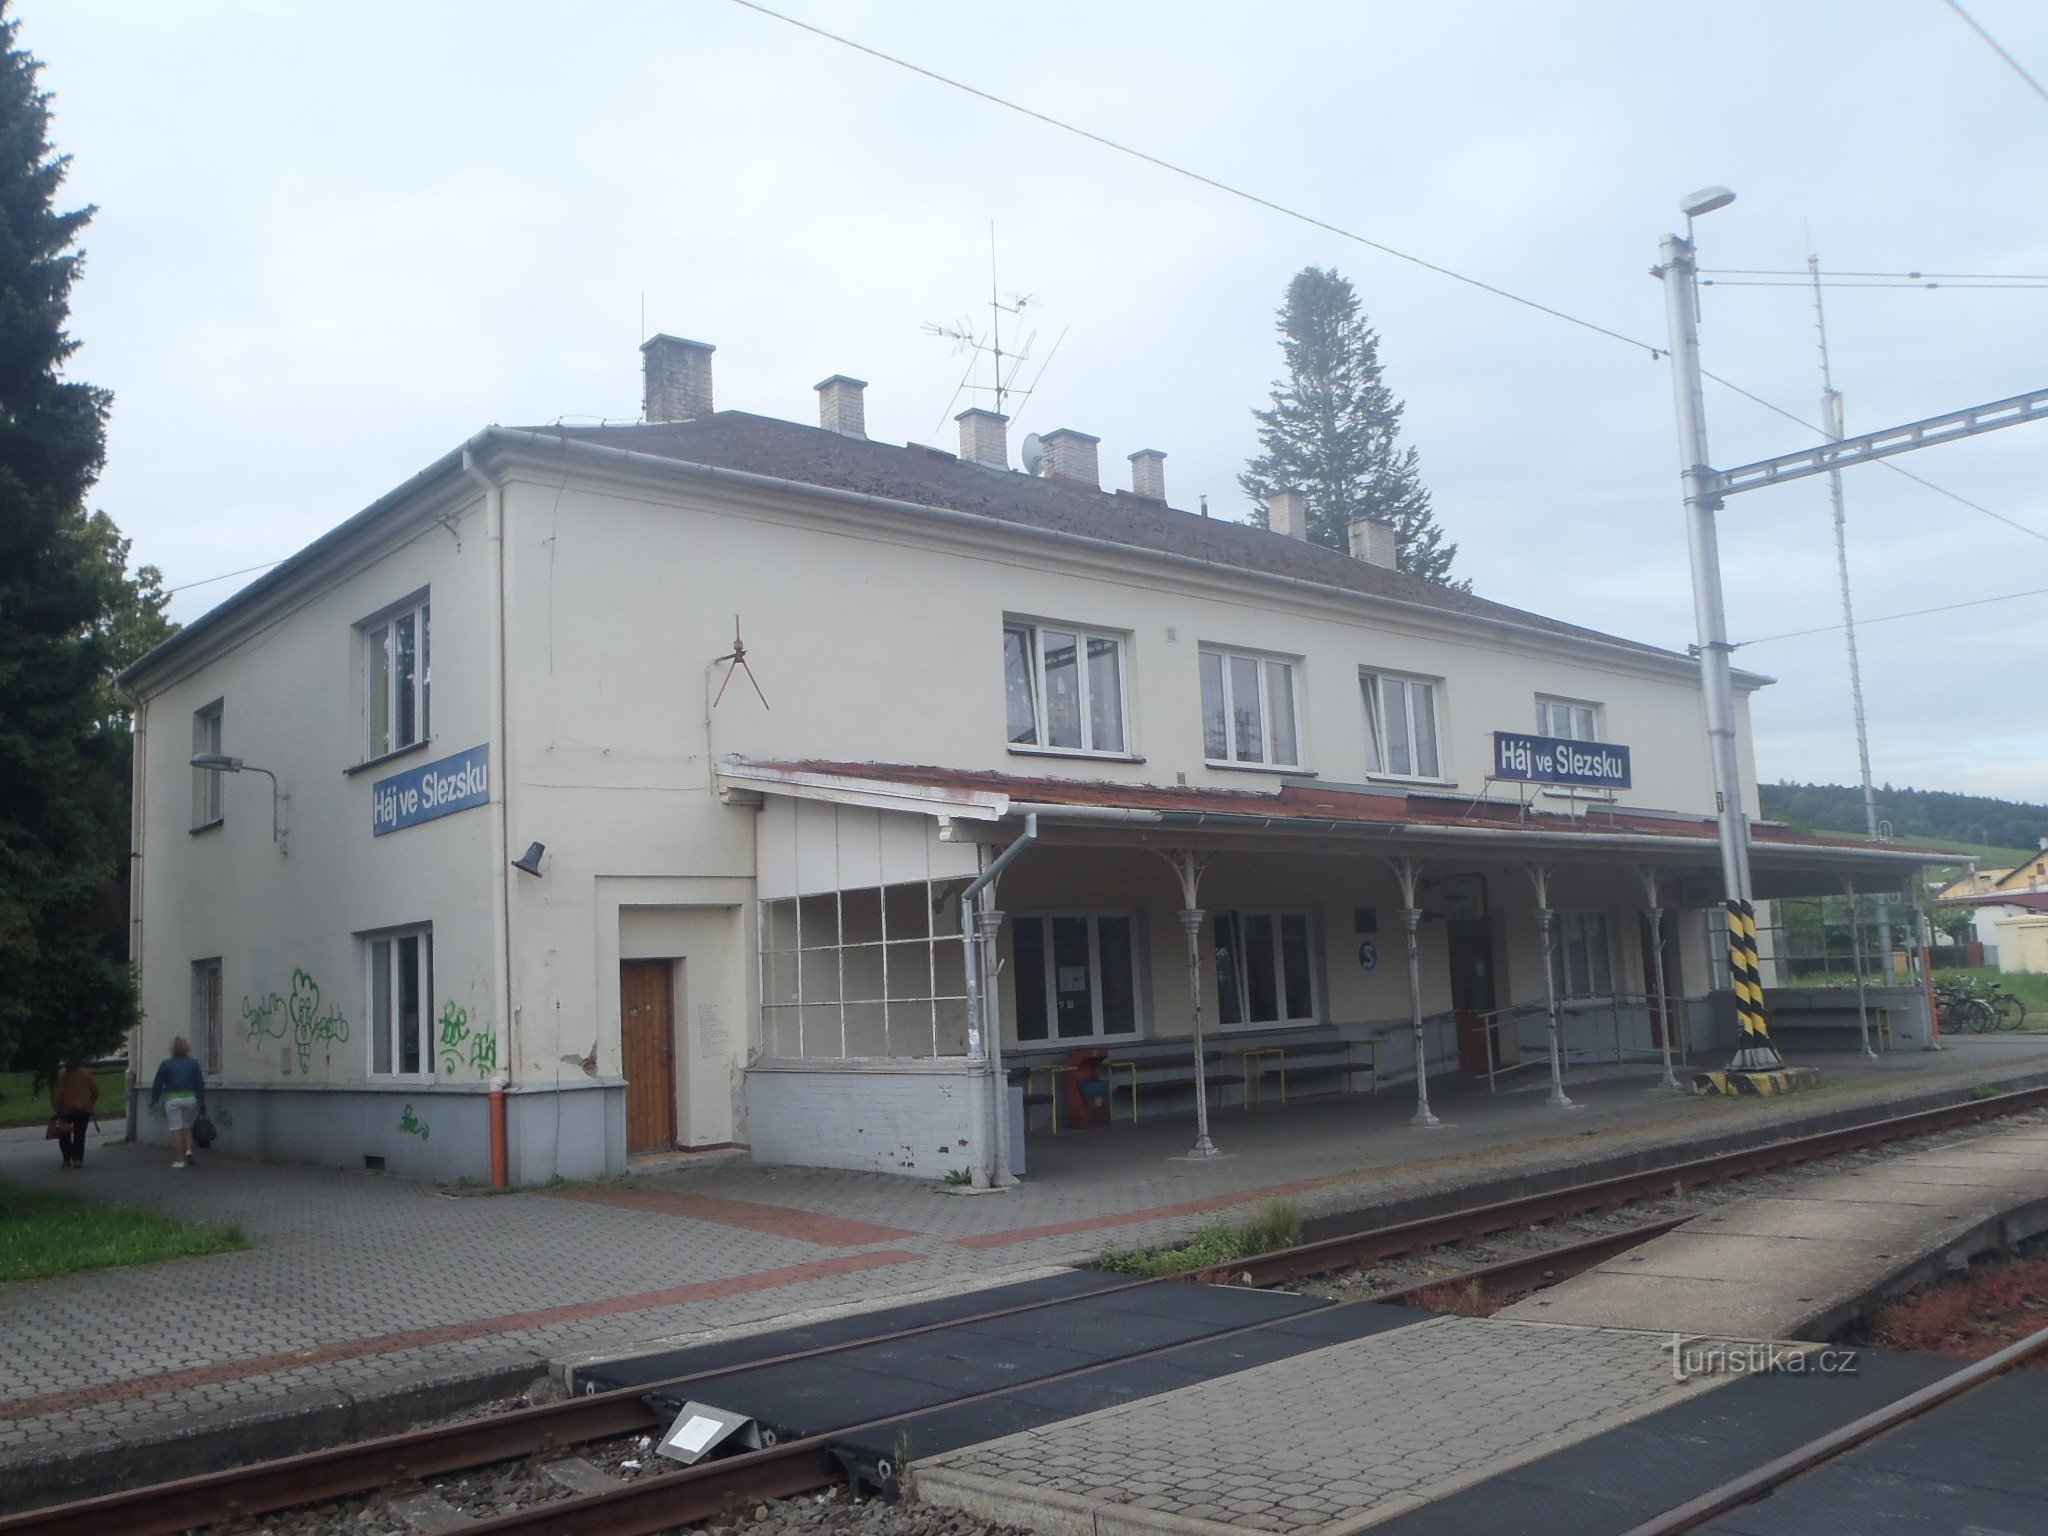 Stacja